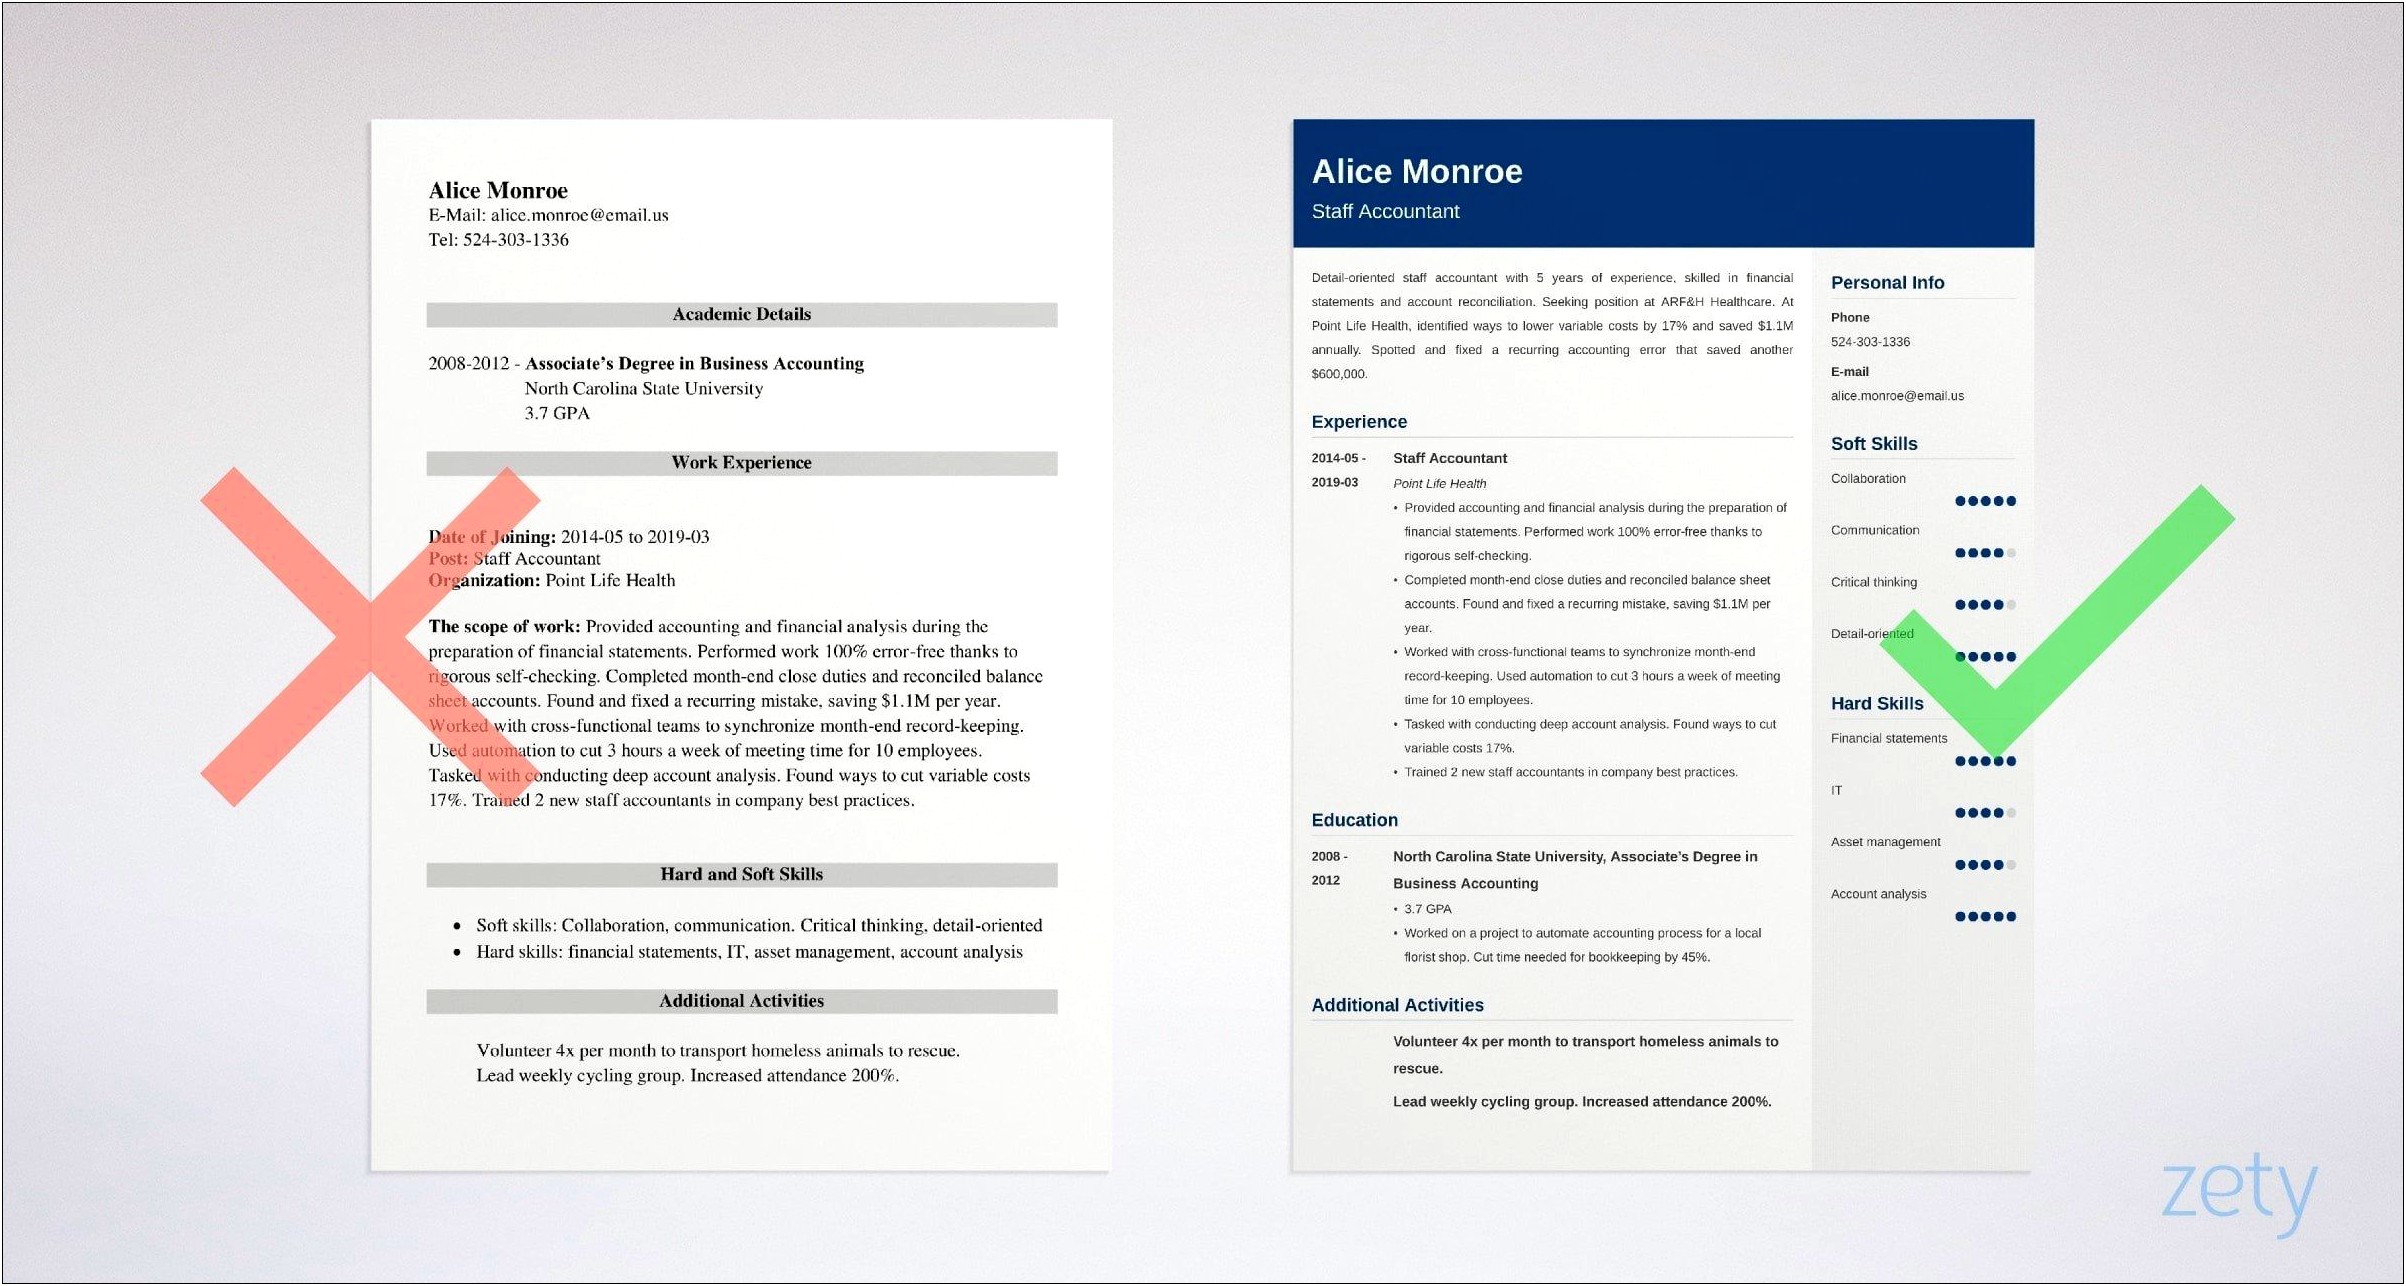 Resume Job Description For Current Job Staff Accountant